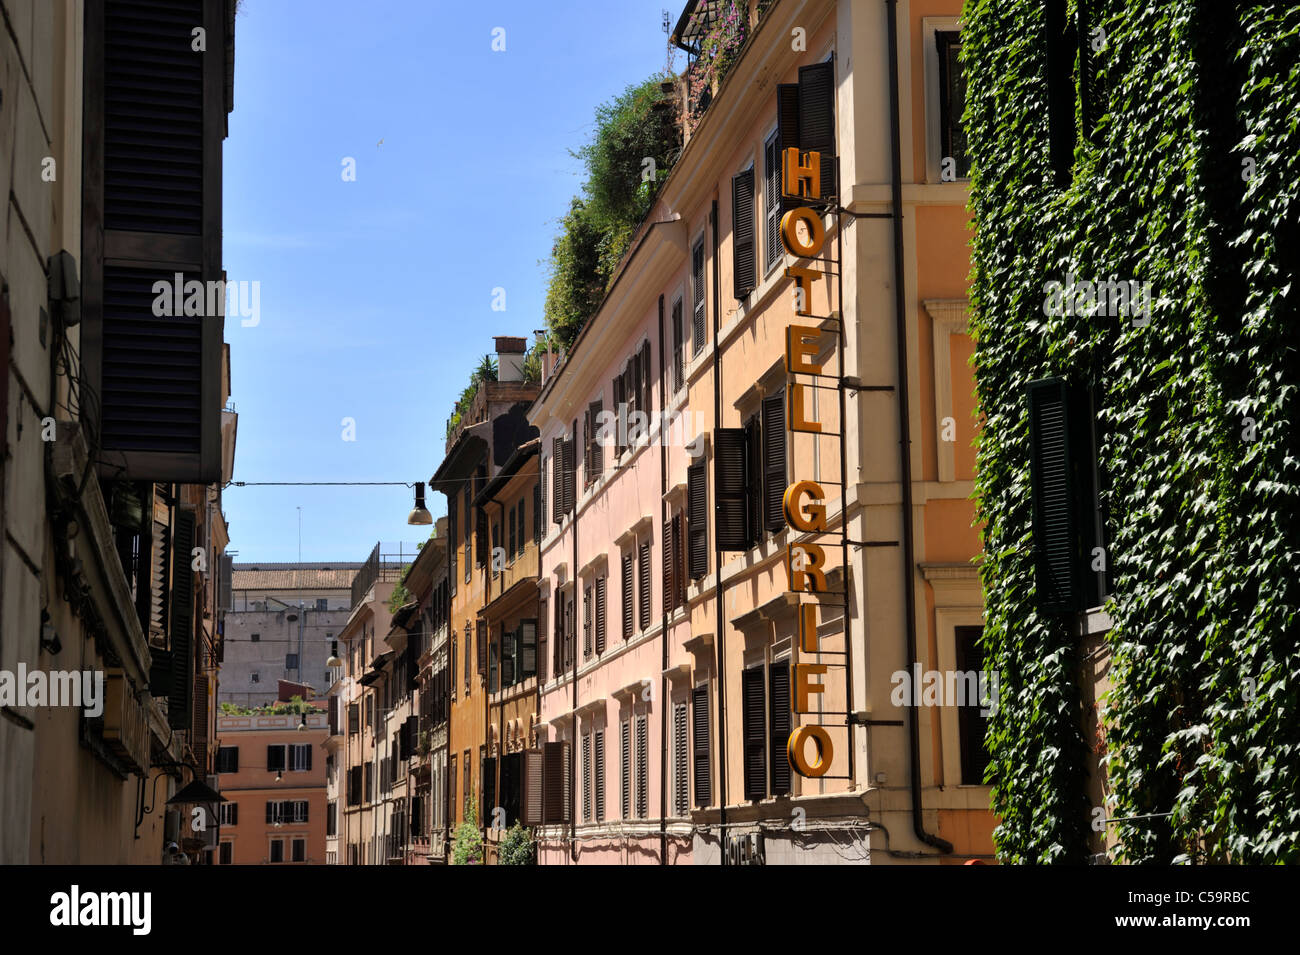 Italia, Roma, barrio de Monti, via del boschetto Foto de stock